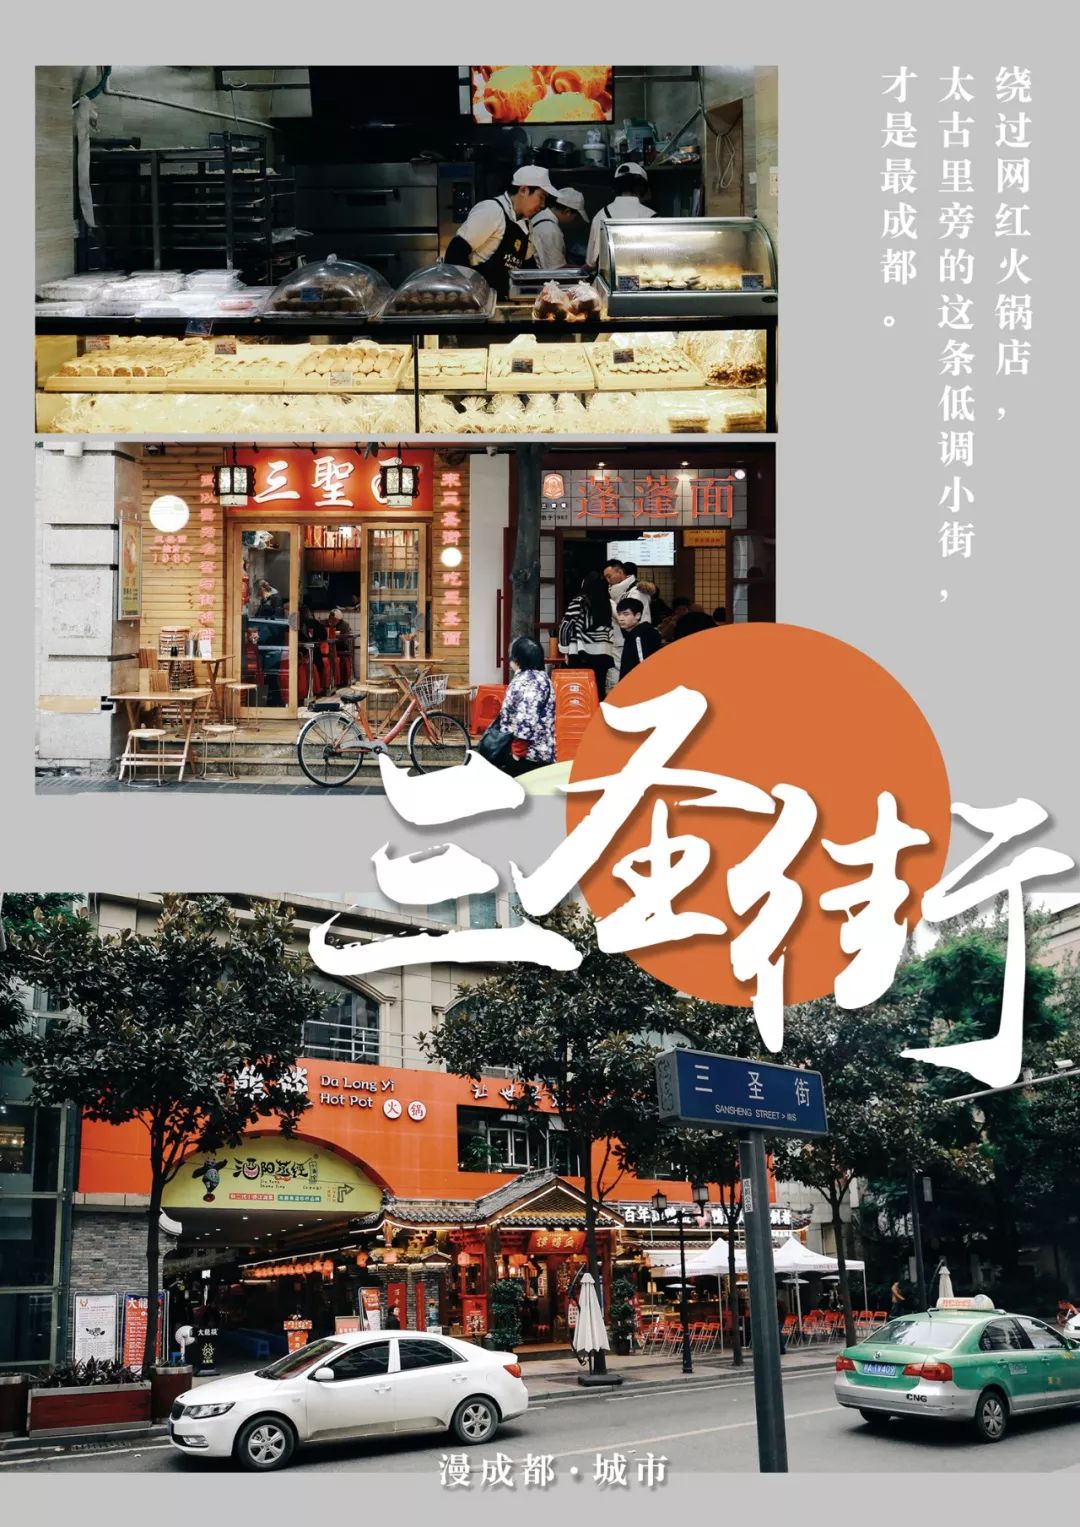 《深夜食堂》和《孤独的美食家》后,一部韩国美食综艺《街头美食斗士